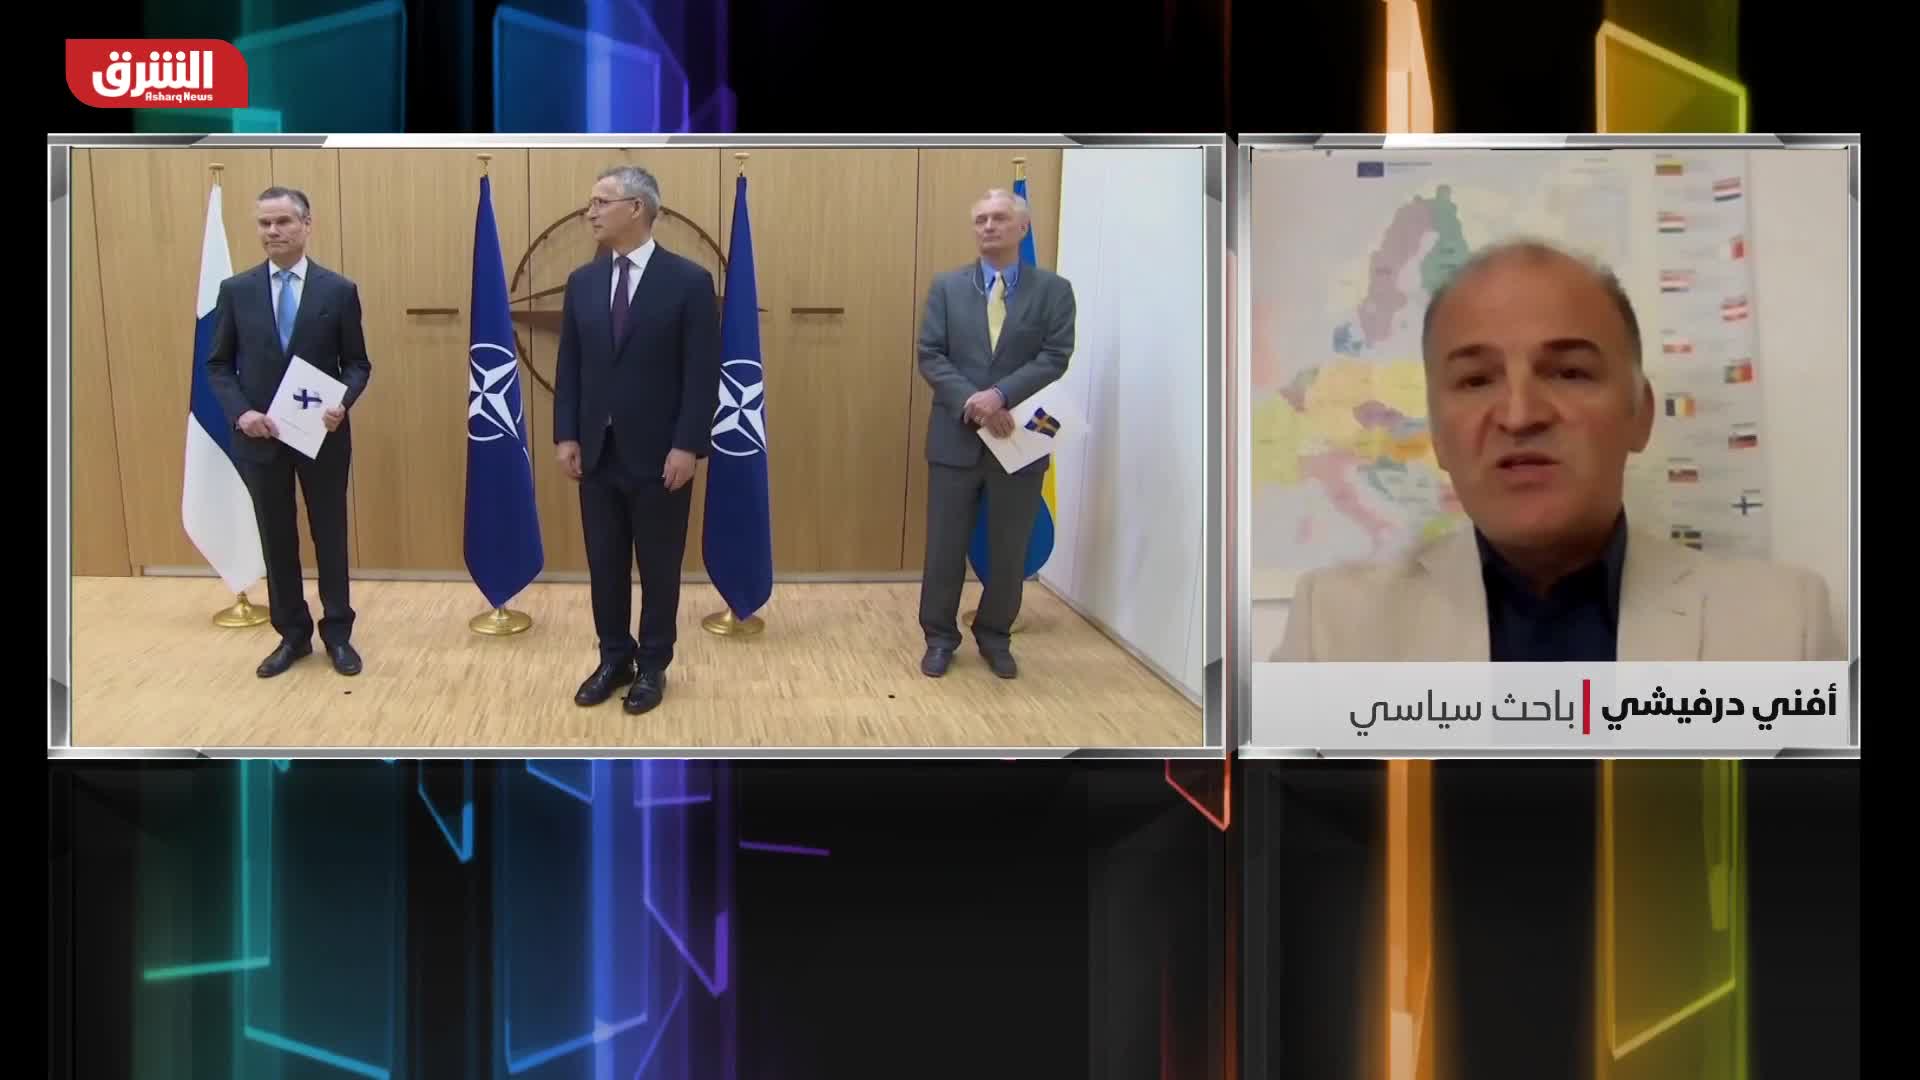 أفني درفيشي: وزيرا خارجية السويد وتركيا يبحثان "عضوية" الناتو